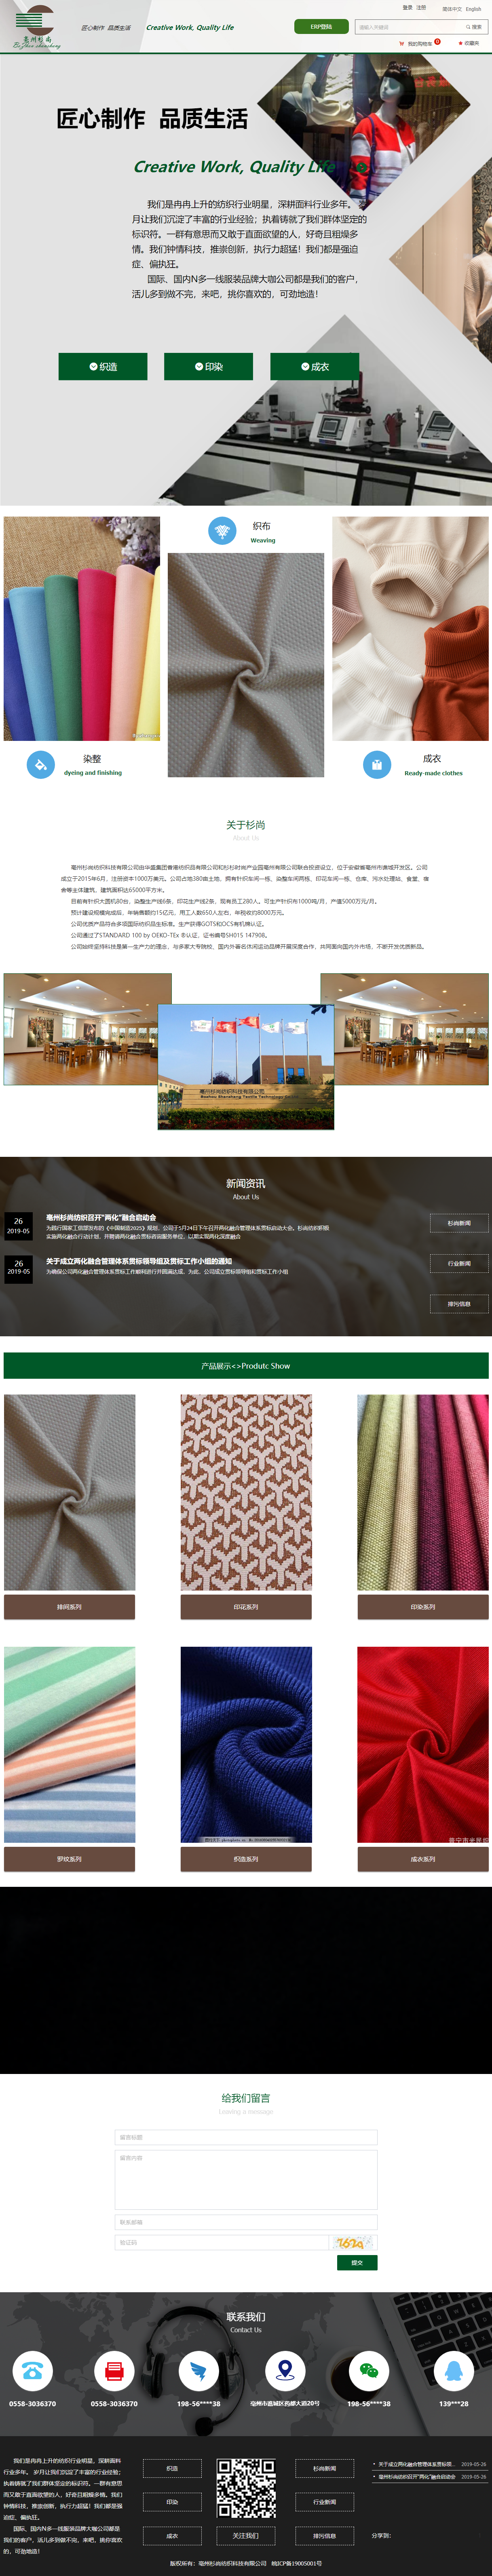 亳州杉尚纺织科技有限公司网站案例